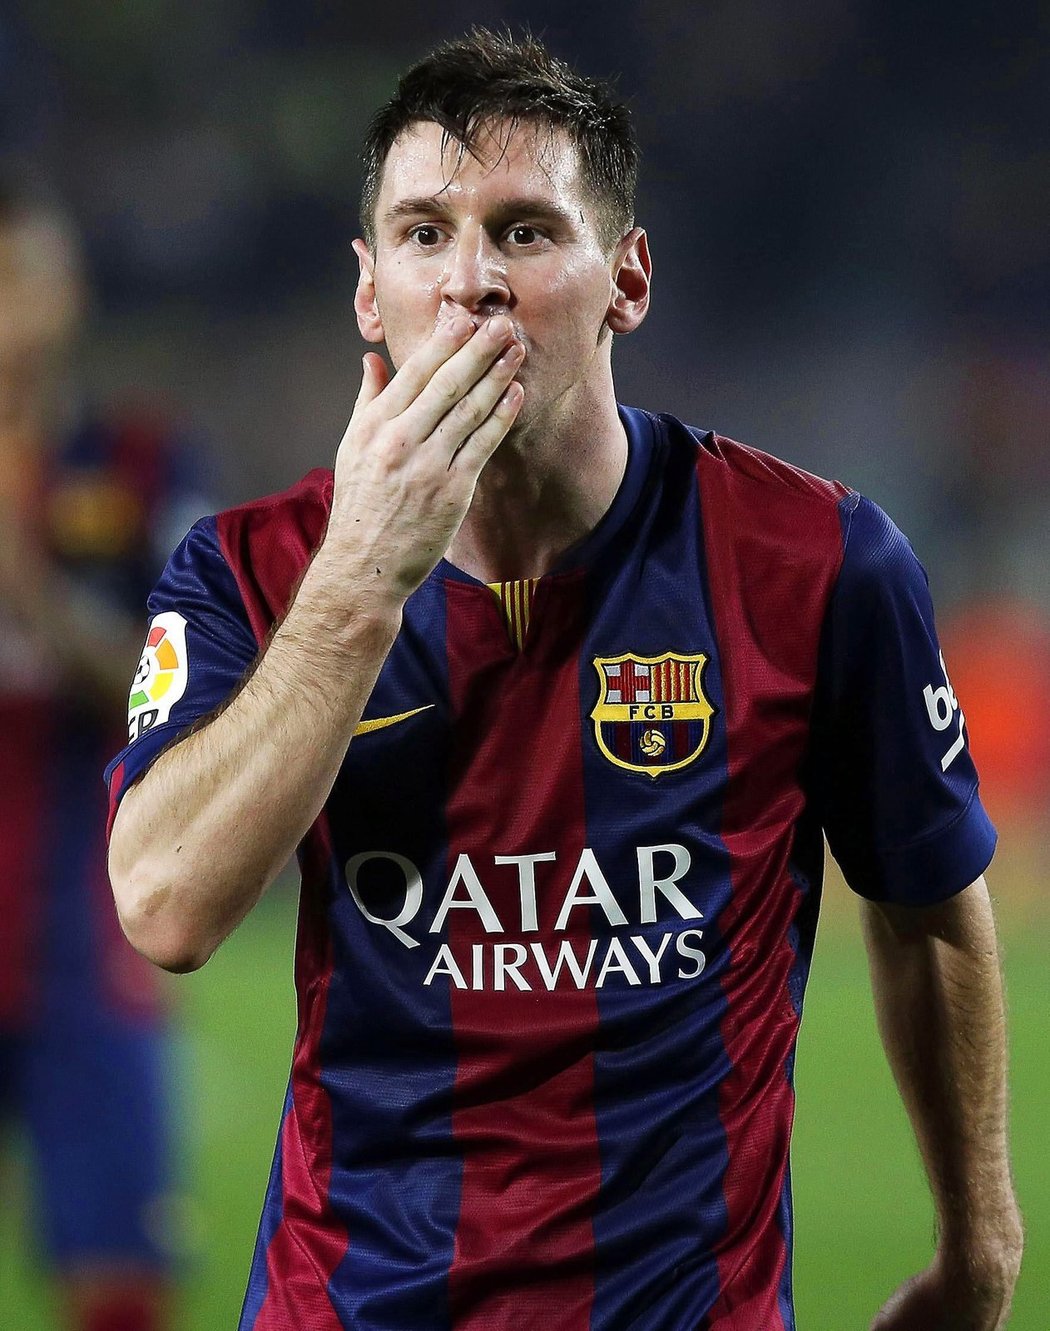 Útočník Barcelony Lionel Messi dal hattrick Seville a s 253 brankami se stal novým držitelem rekordu španělské ligy, jehož majitelem byl od roku 1955 Telmo Zarra. Slavný Argentinec si chvíle slávy užíval.